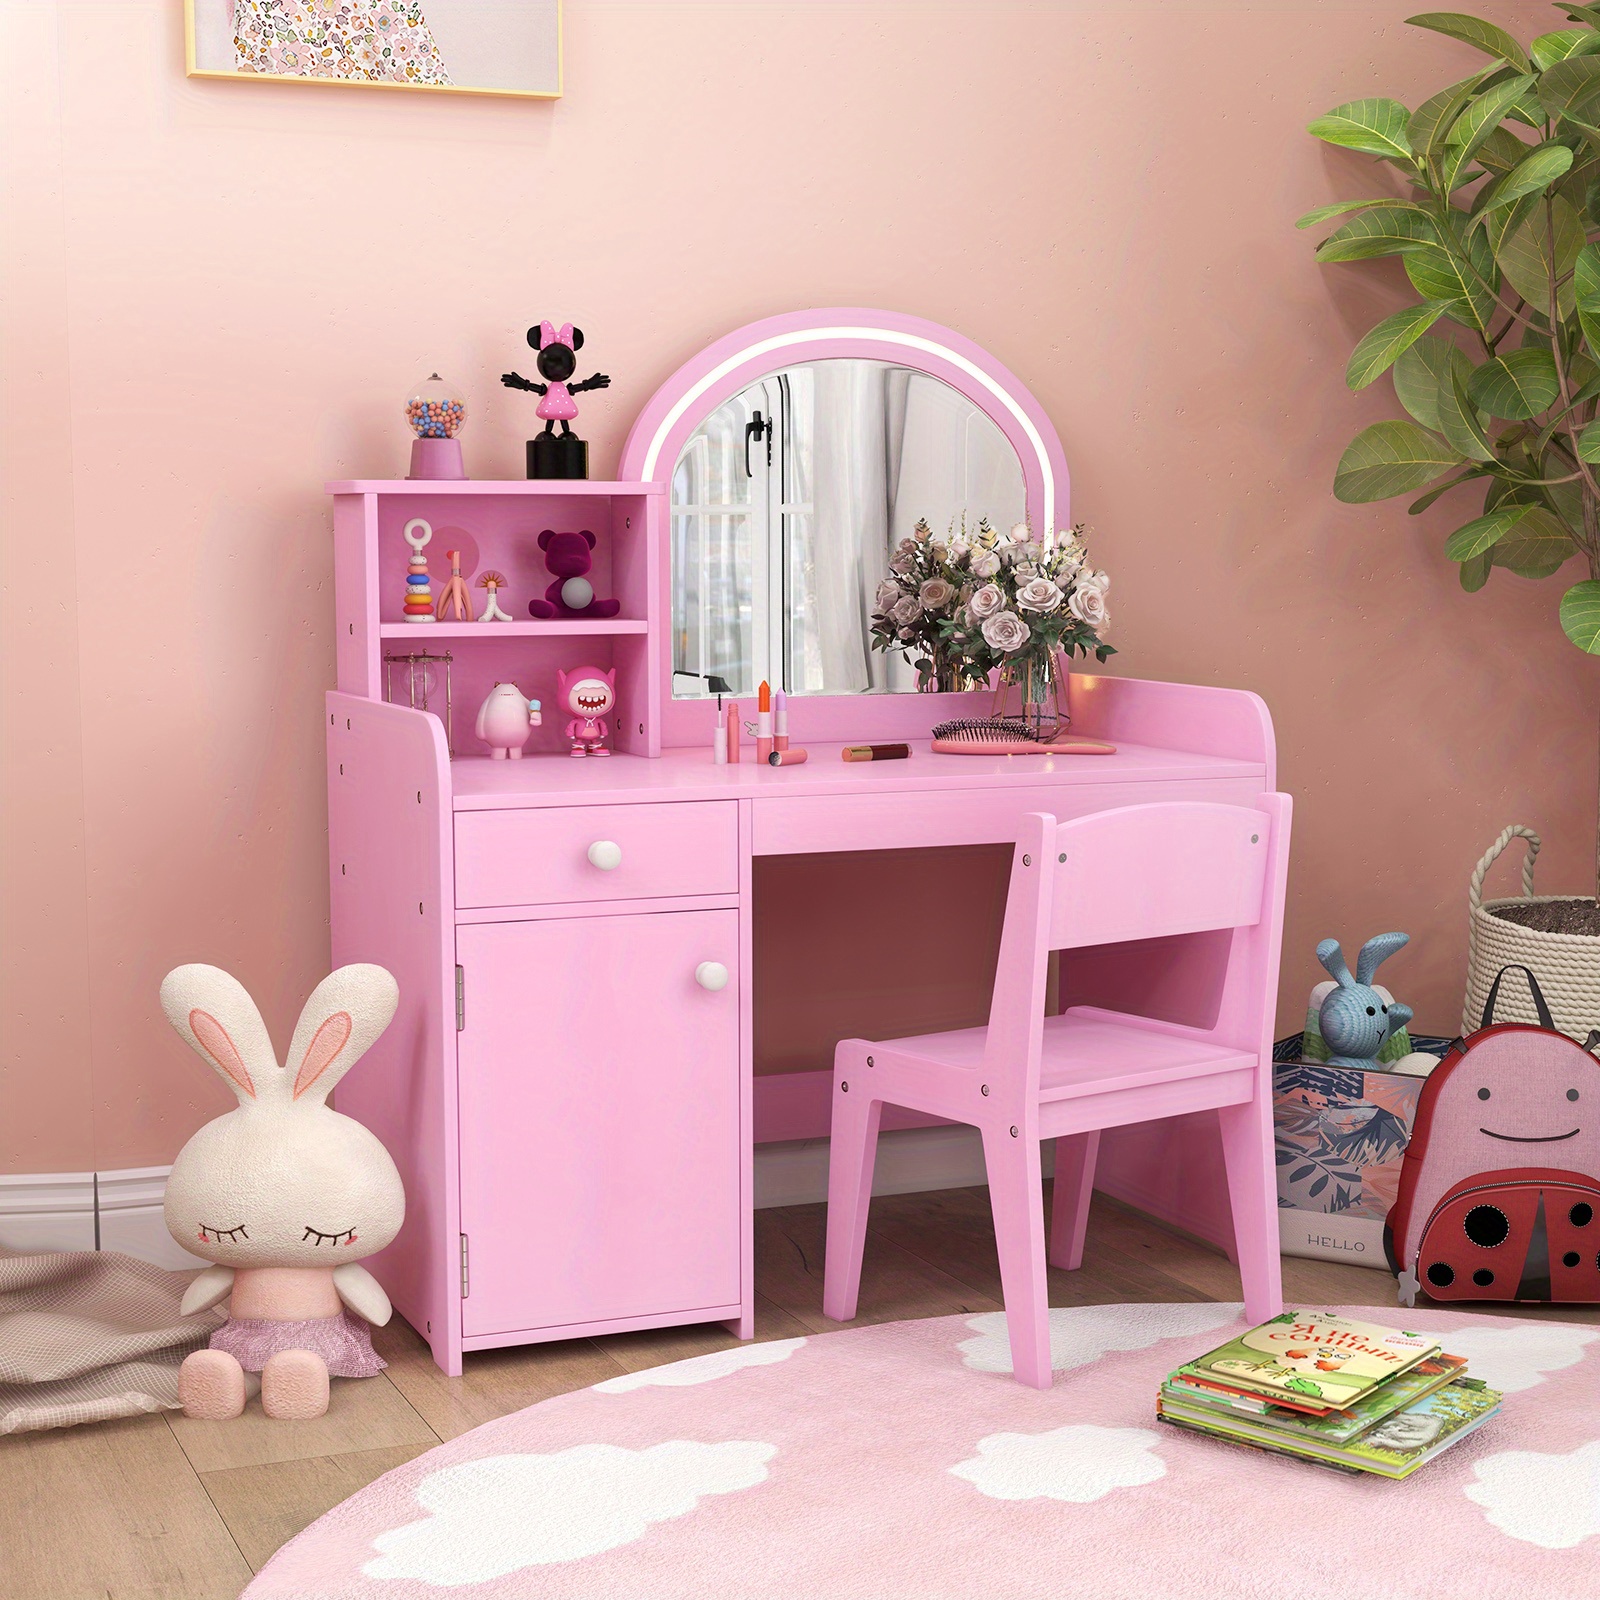 

Lifezeal Kid Vanity Table Chair Set 2-color Led Lights Large Drawer Shelf Cabinet Pink